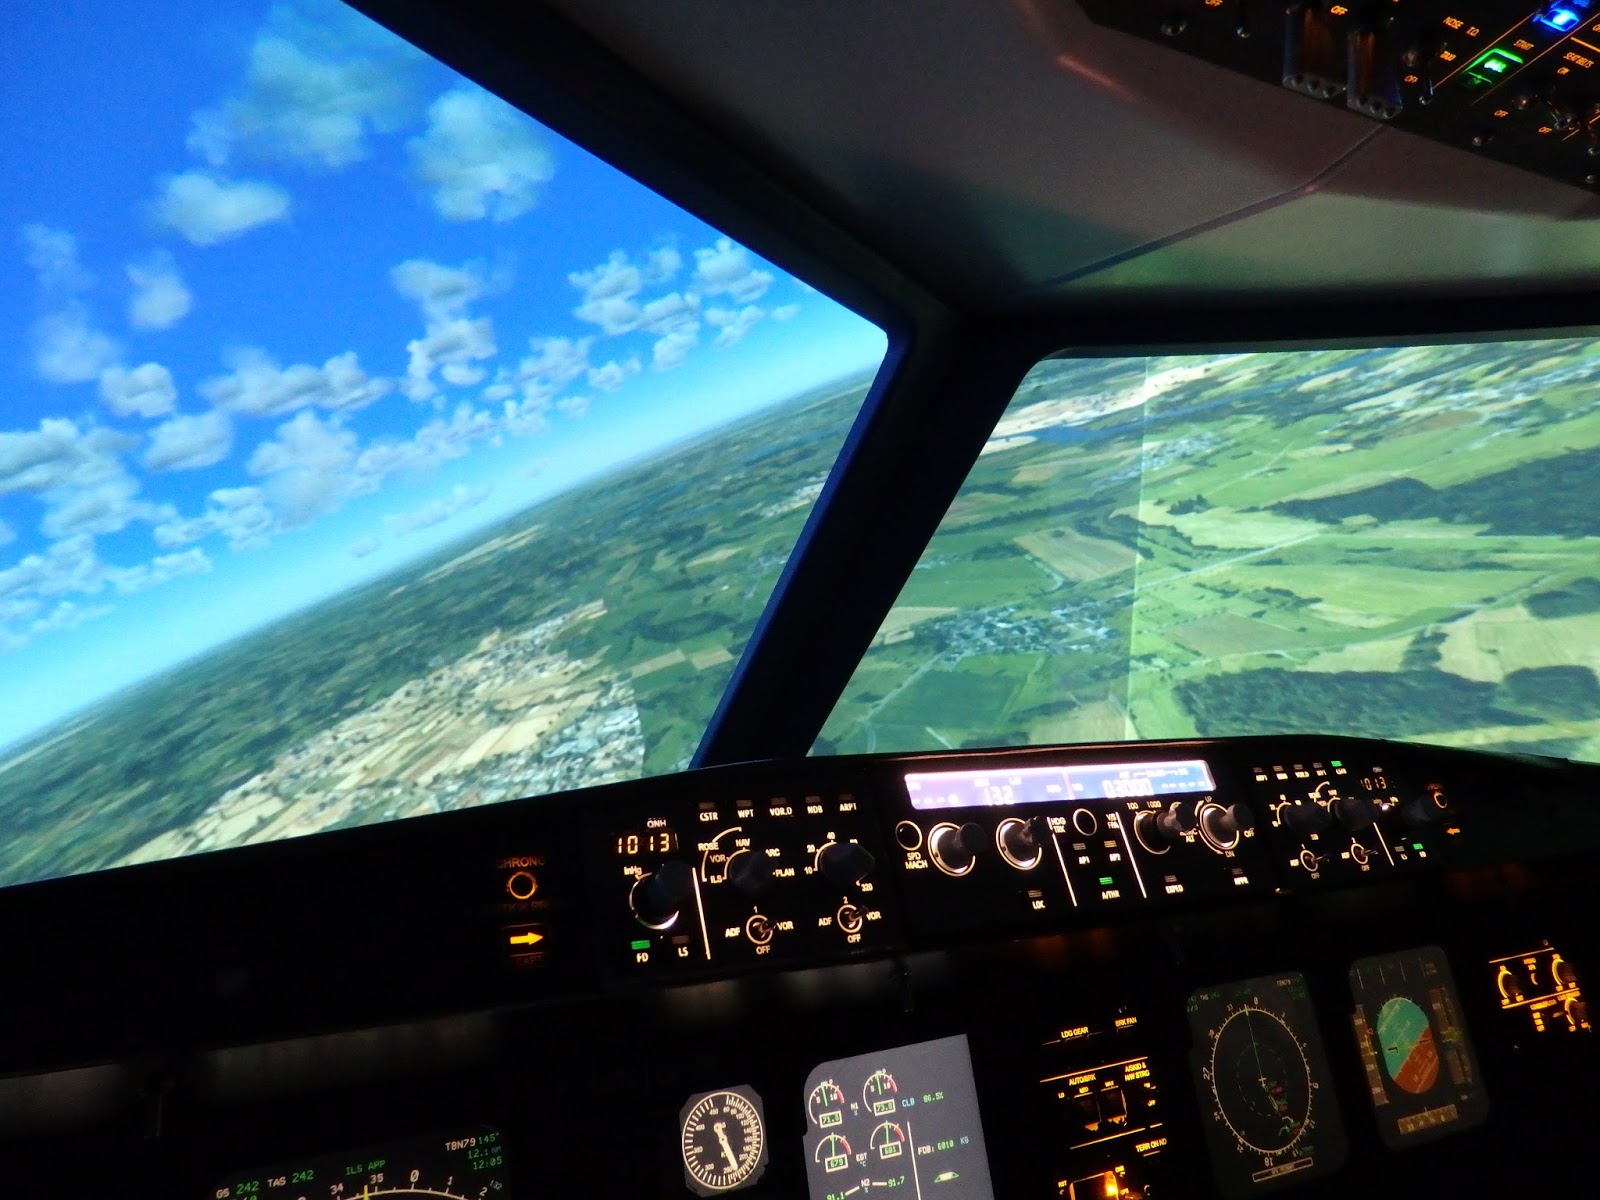 AviaSim - Expériences en simulateur de vol en France